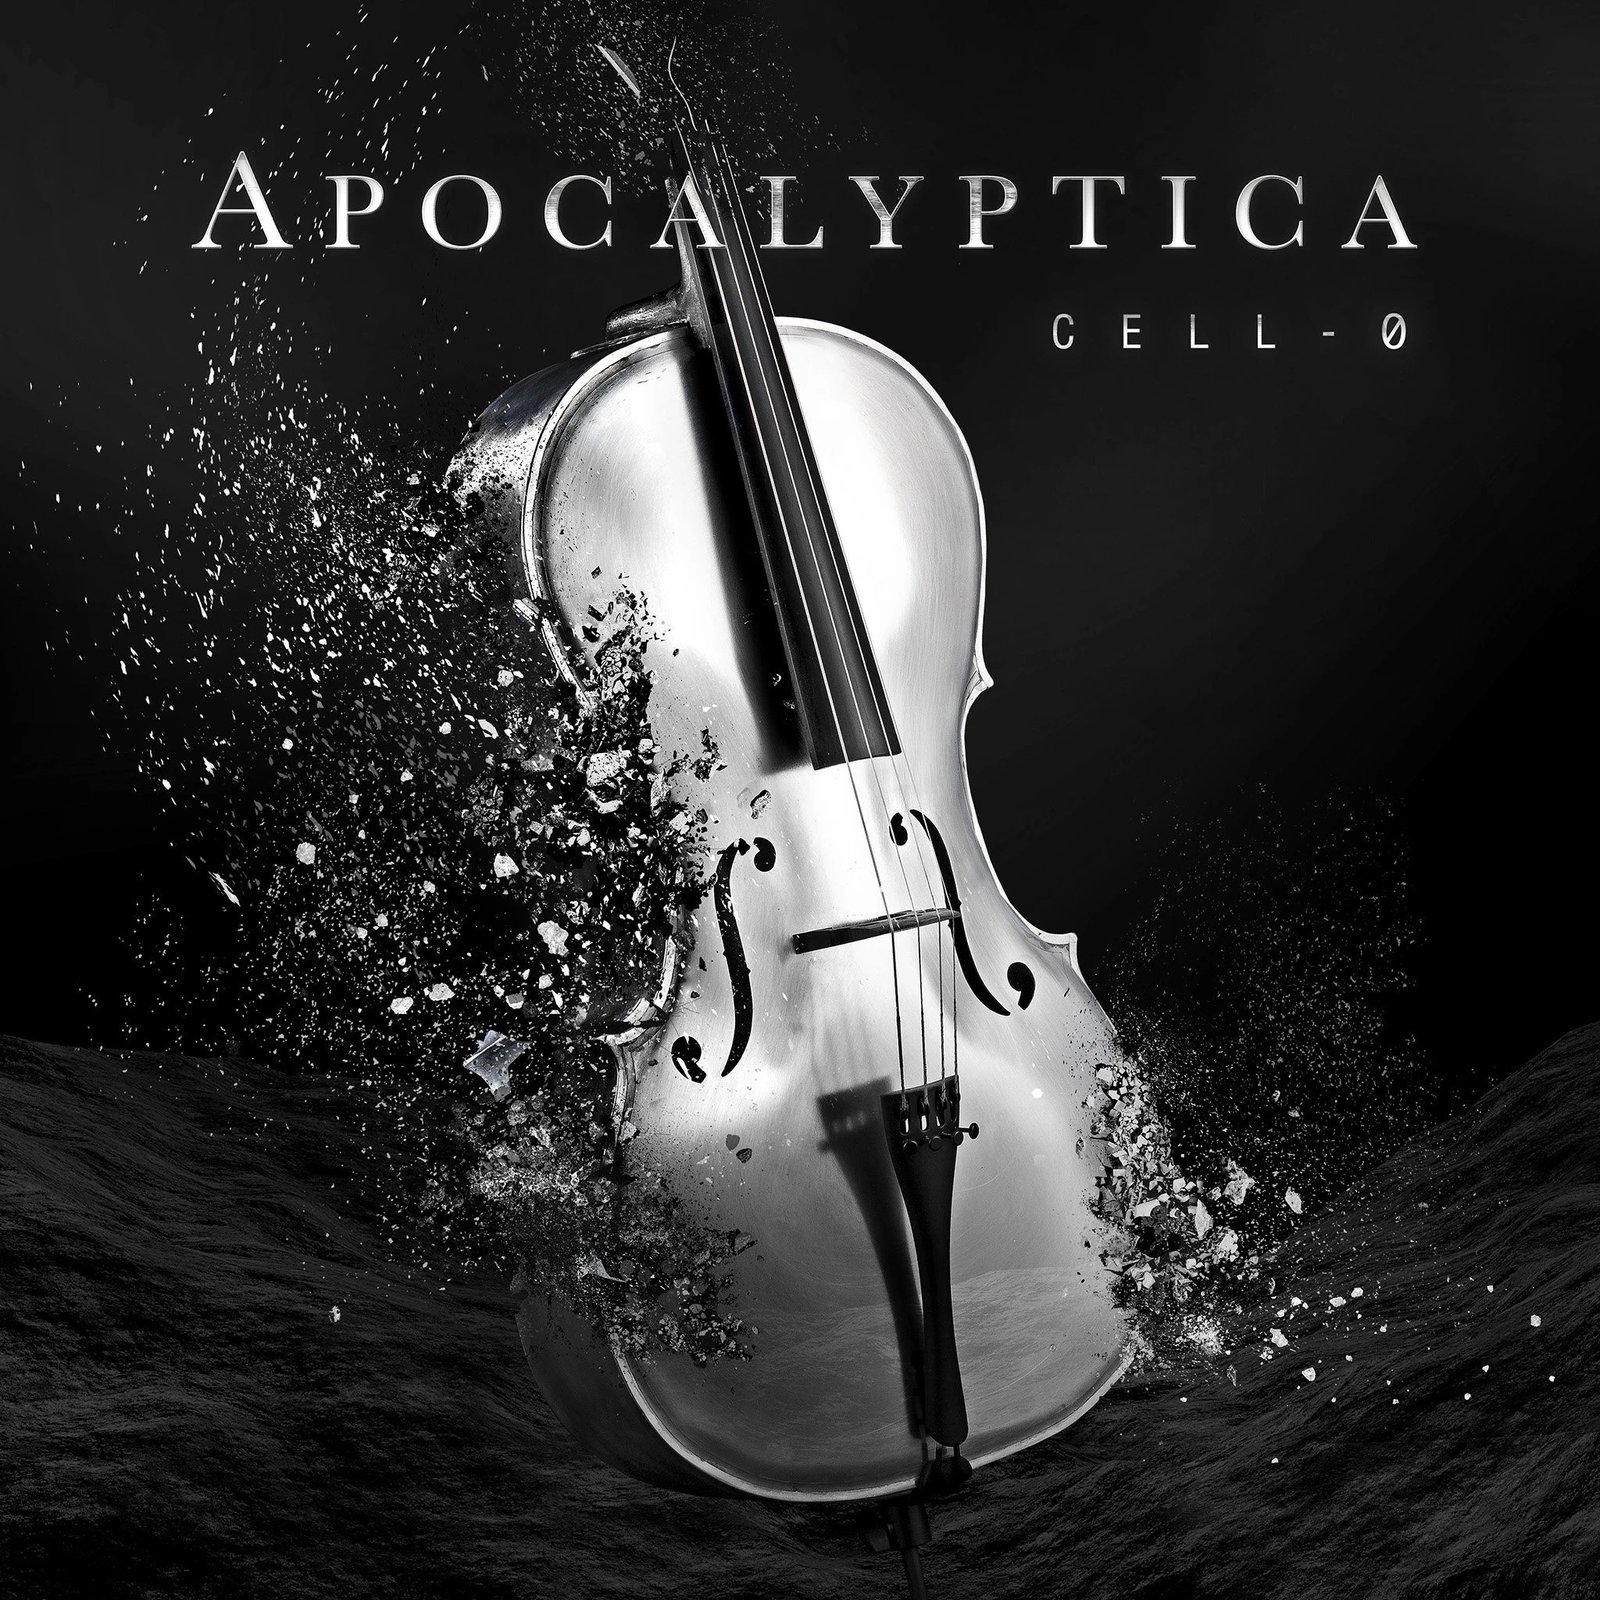 apoc cello Apocalyptica - 'CELL-0' Summa Inferno | Metal + Rock & Alternative Music